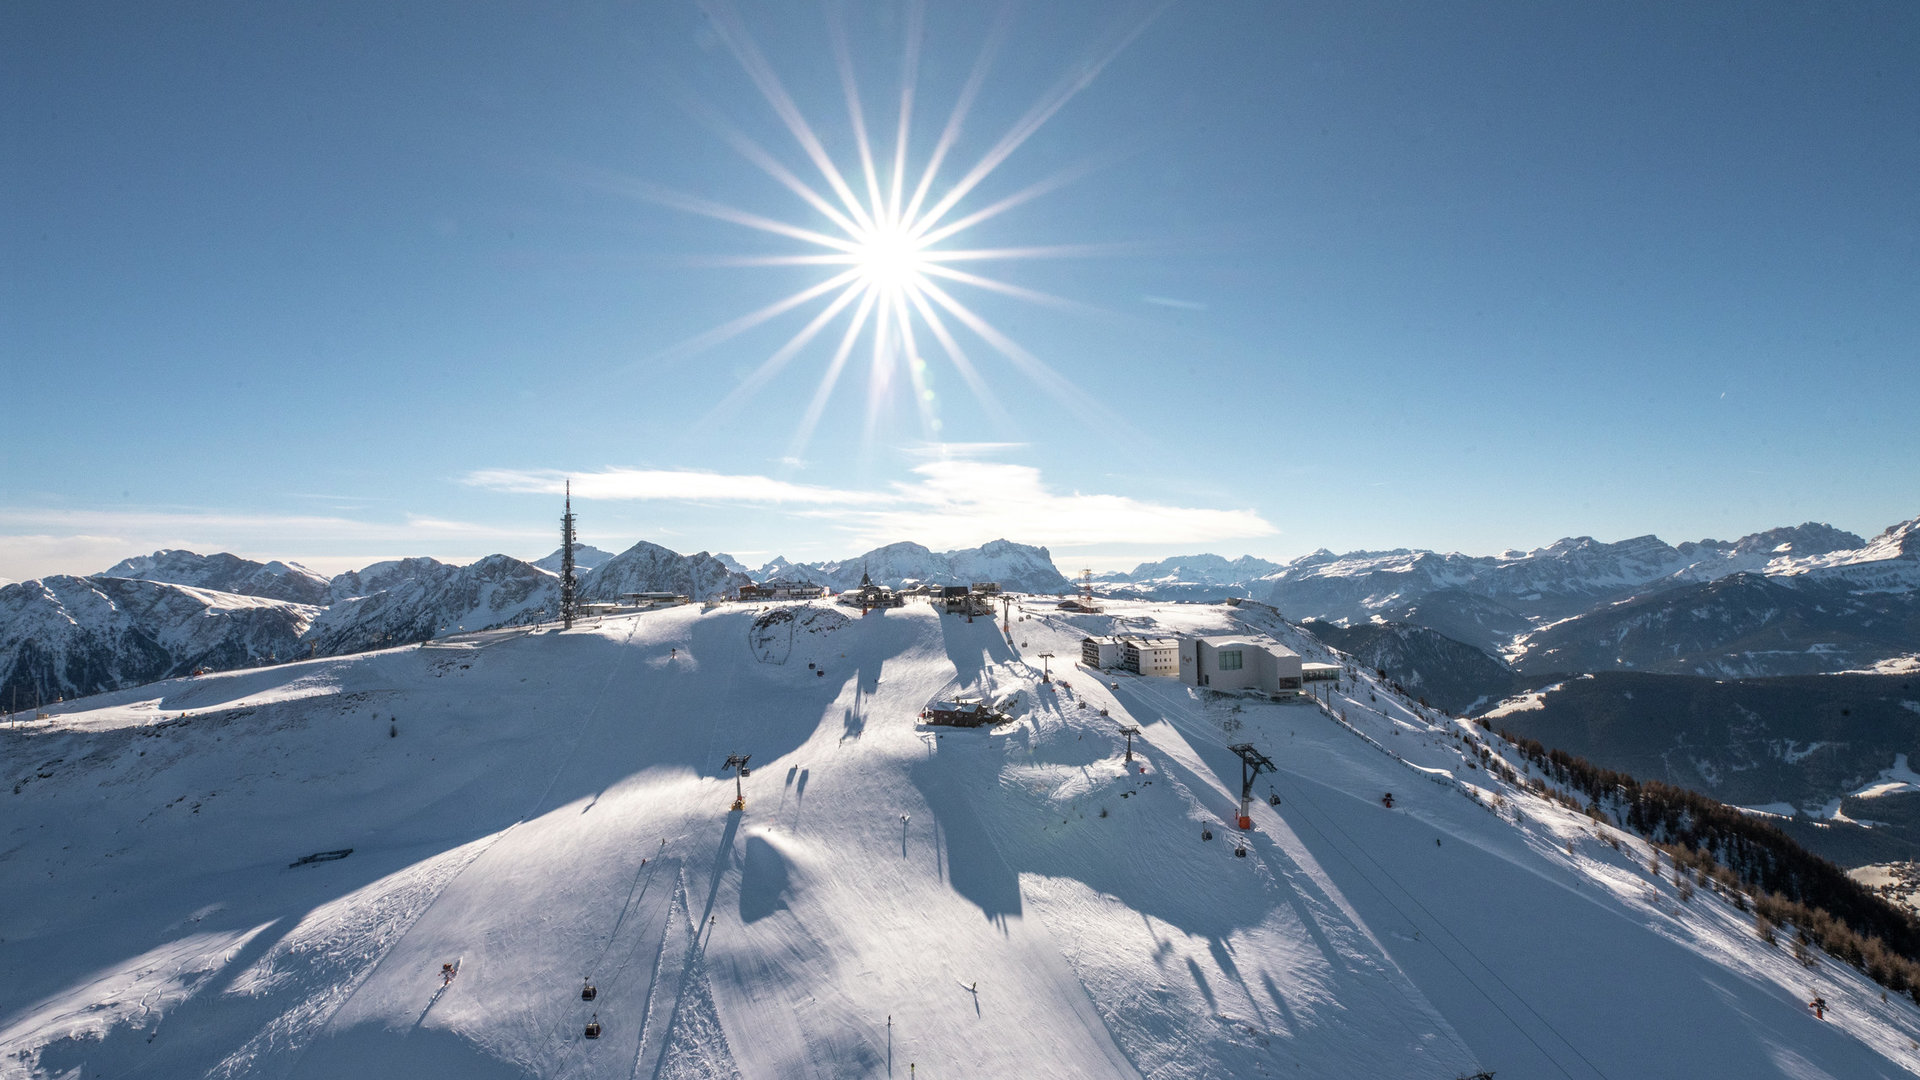 Kronplatz, the number one ski mountain of the Alps